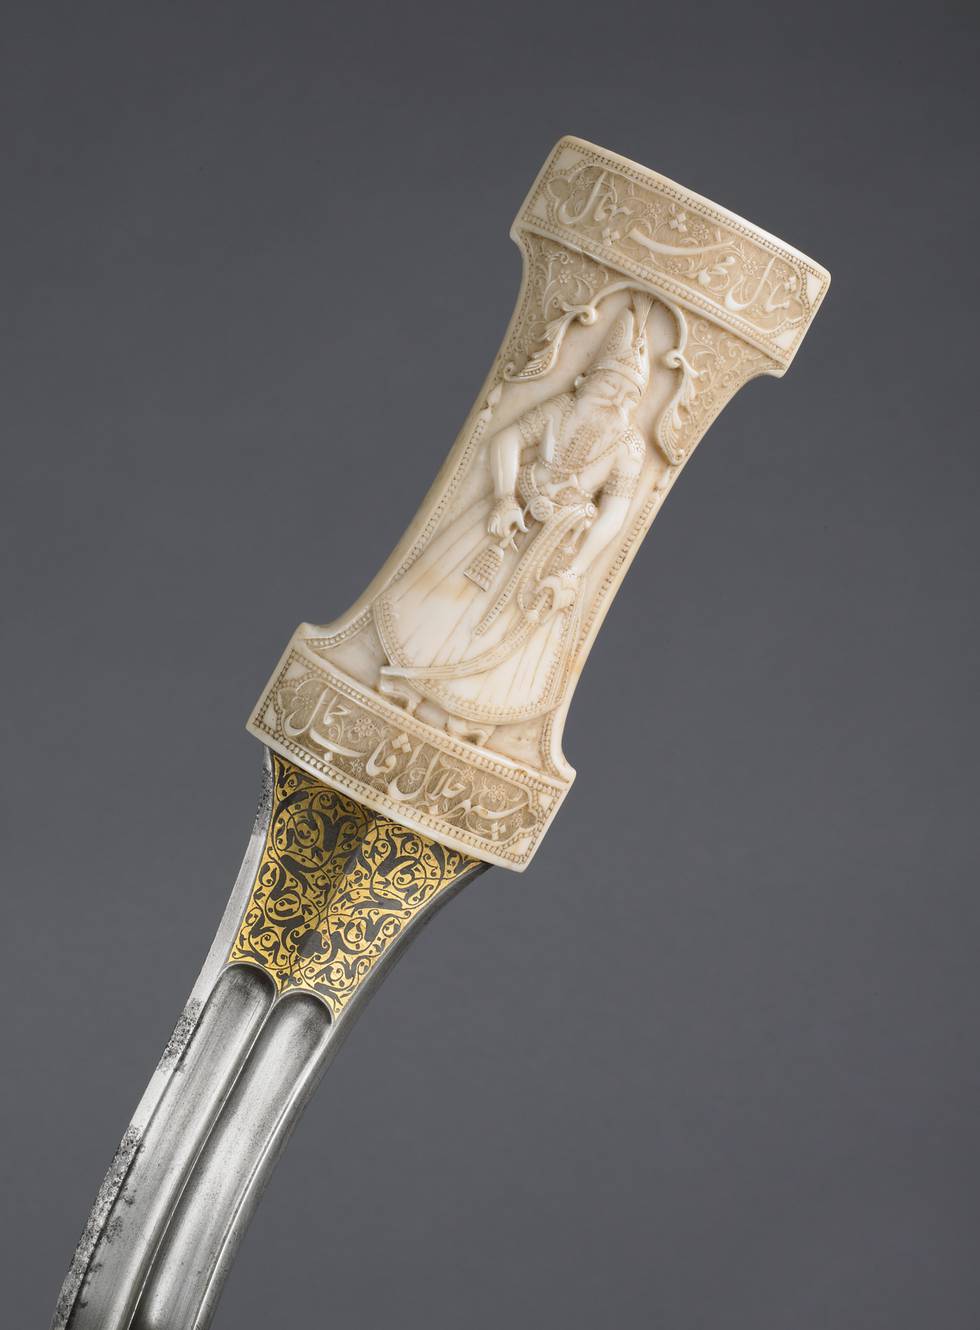 A detail of a dagger hilt